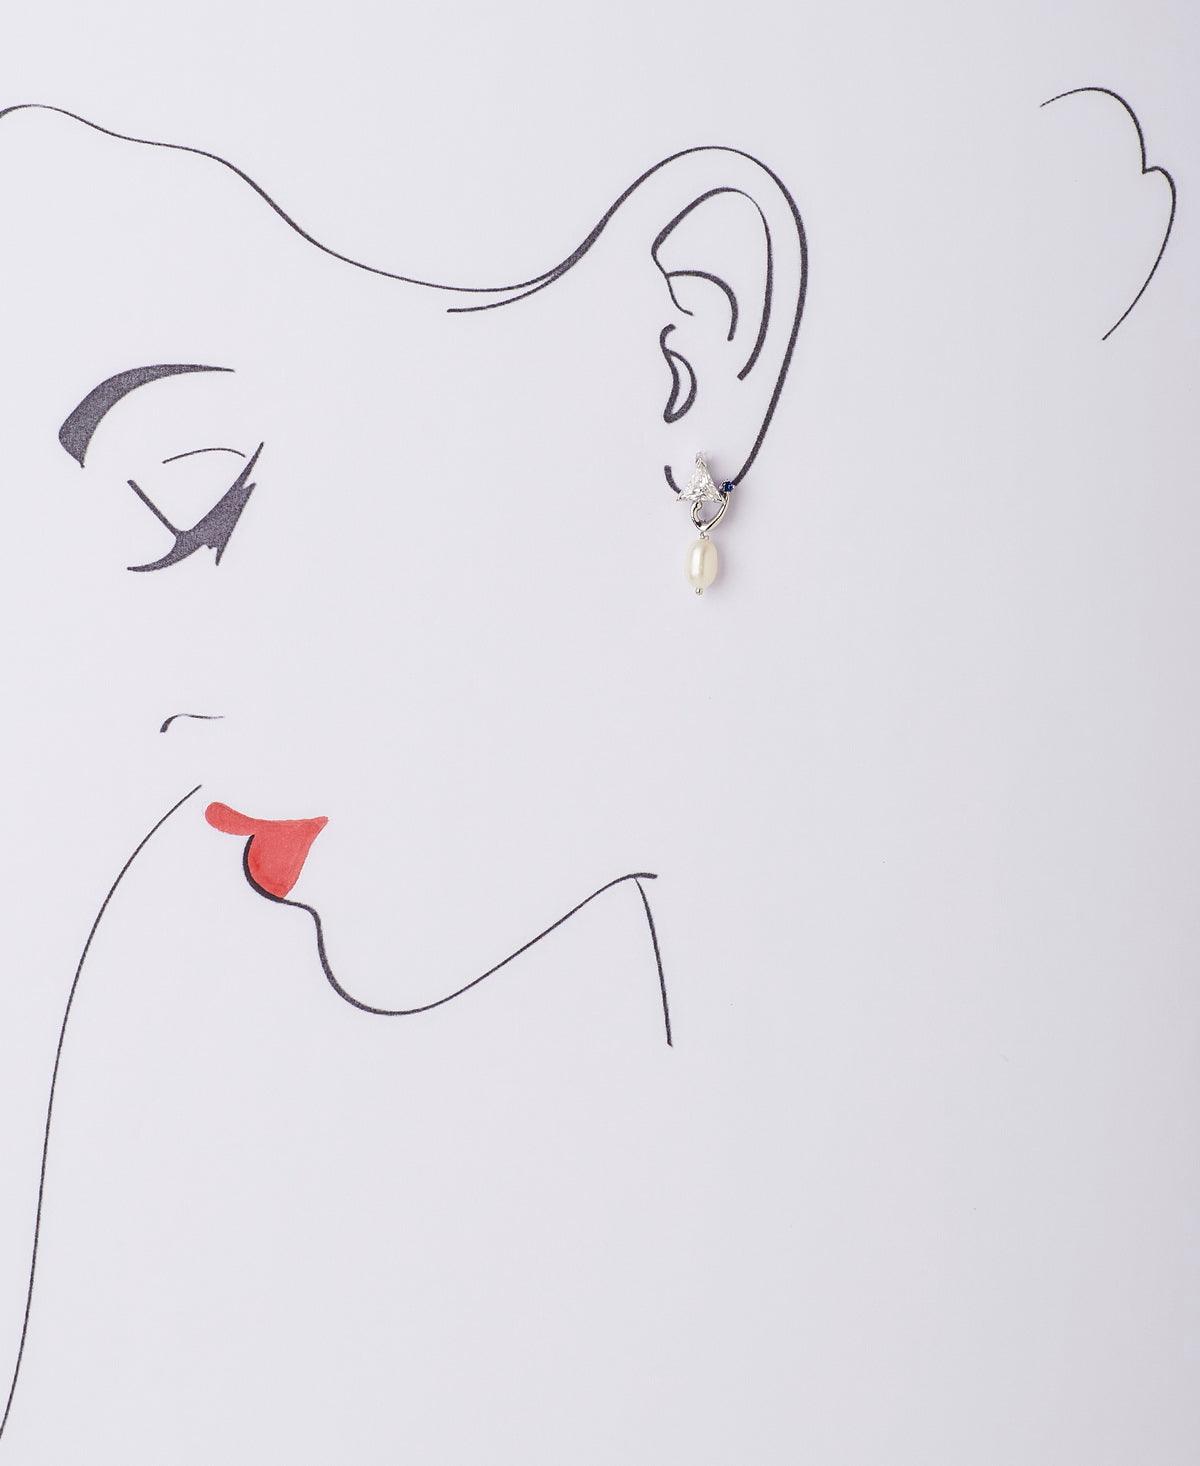 Fancy Pearl Hanging Earrings - Chandrani Pearls